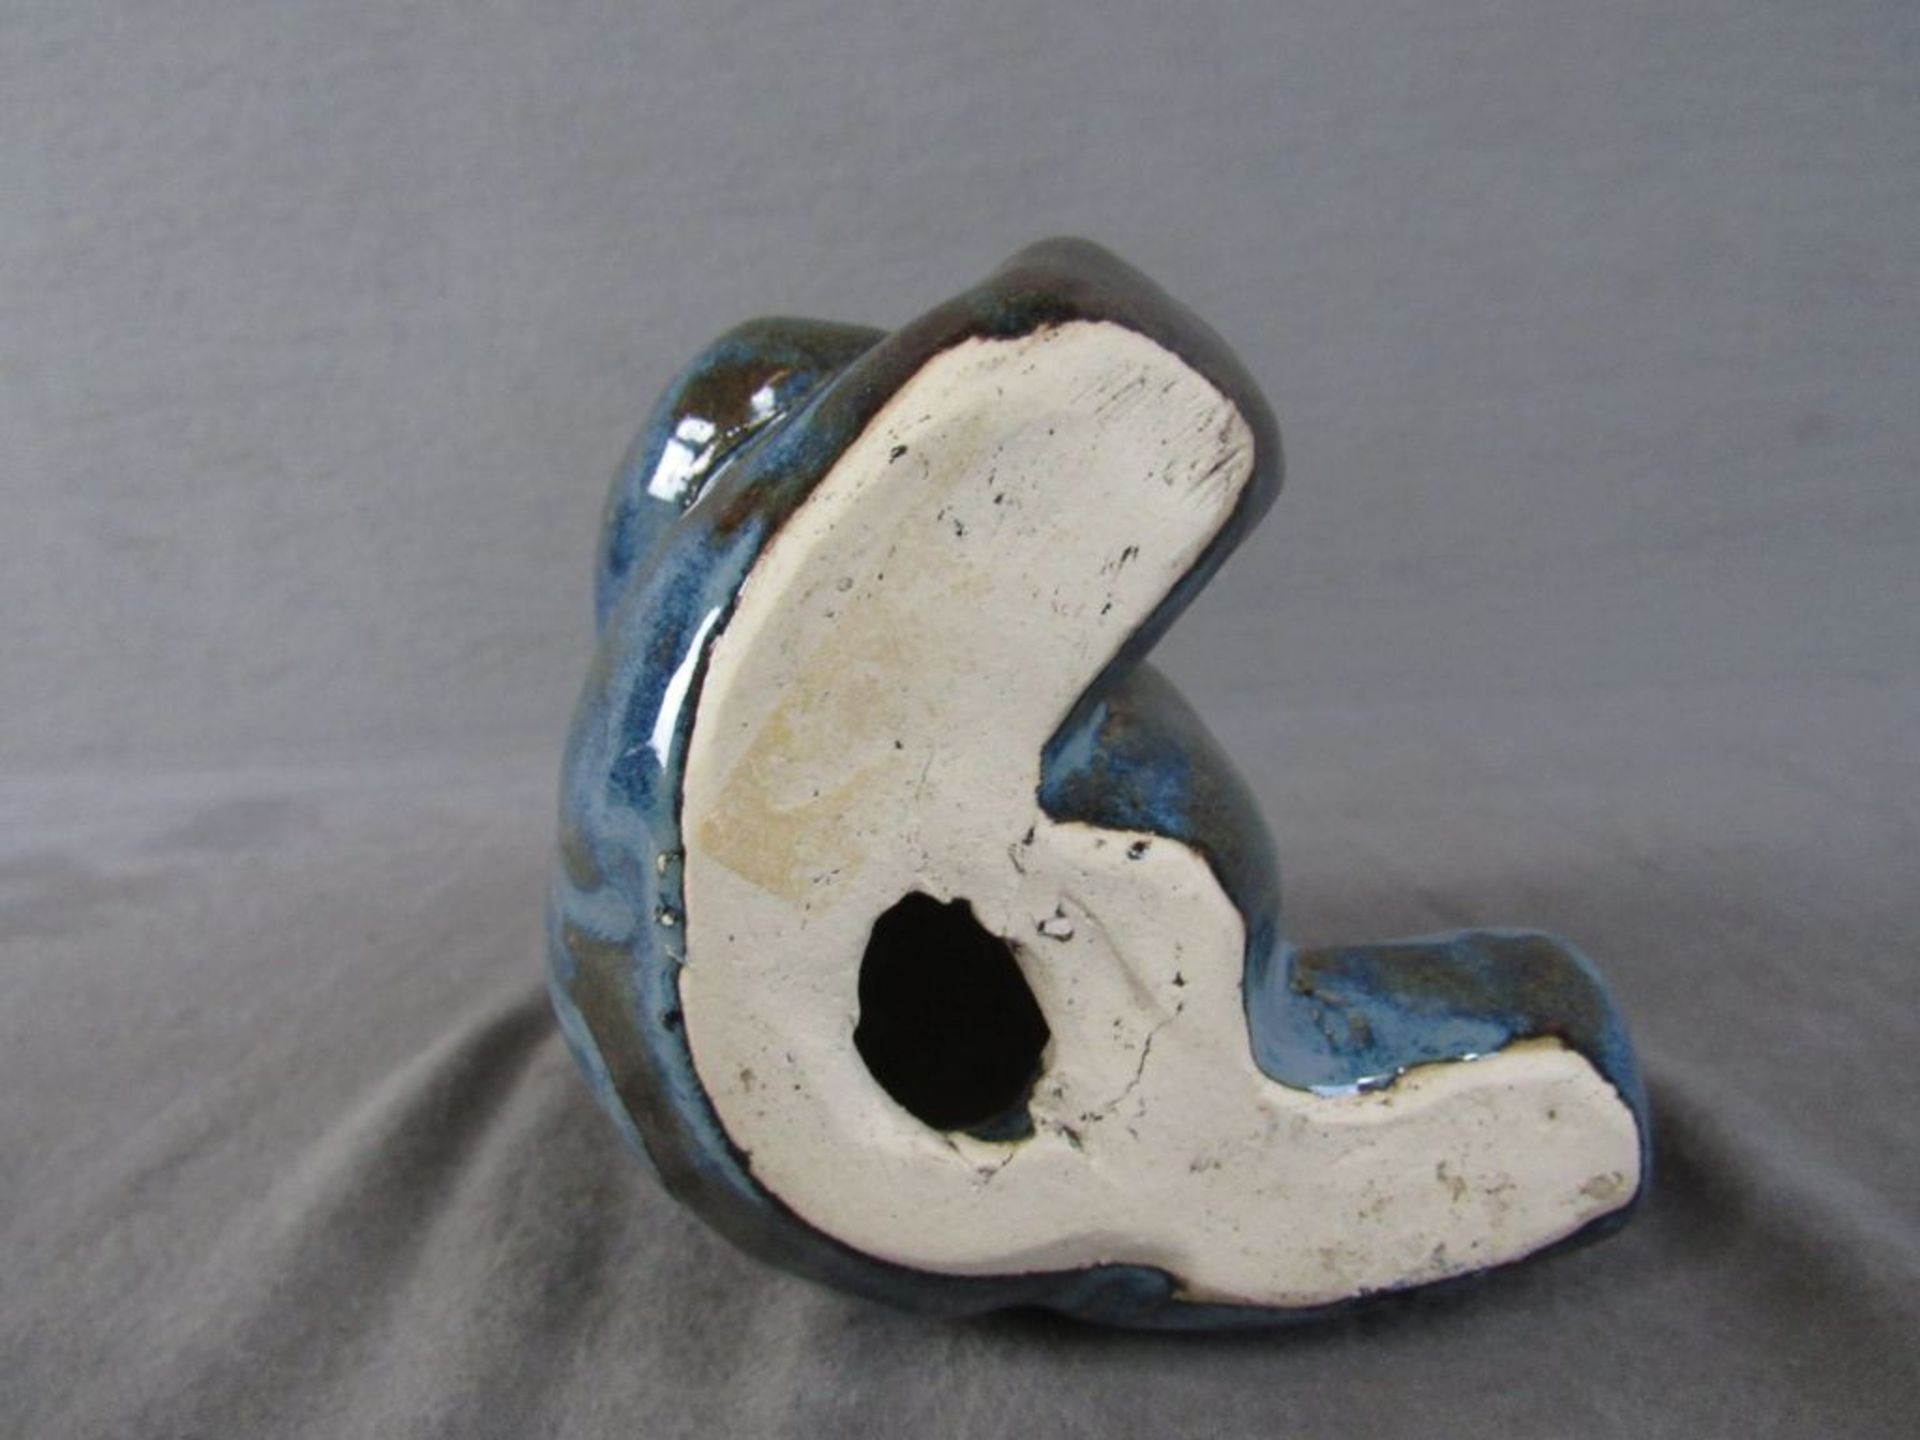 Lasierter Keramikbär sitzend 16cm hoch - Image 4 of 4